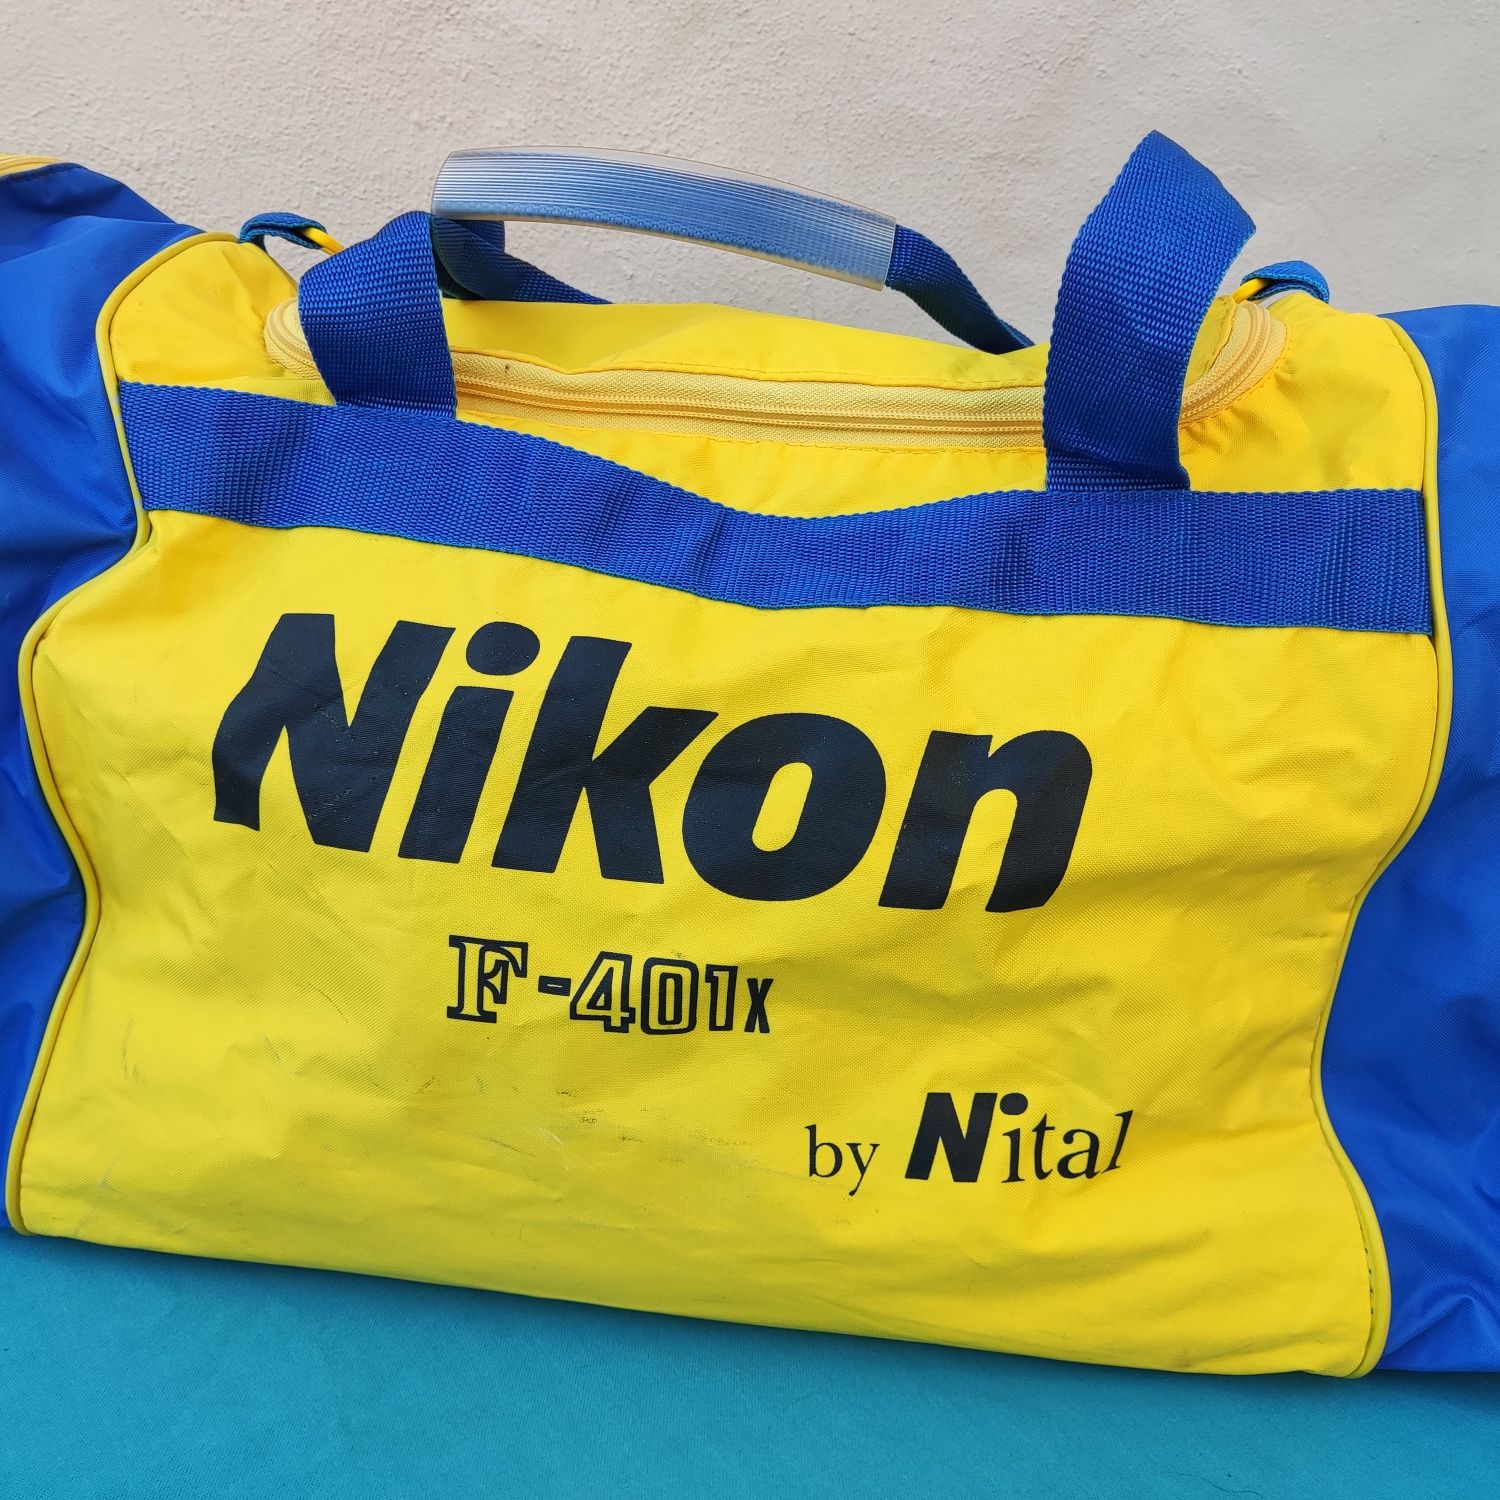 Mala de desporto publicitária da marca Nikon F-401x by Nital vintage